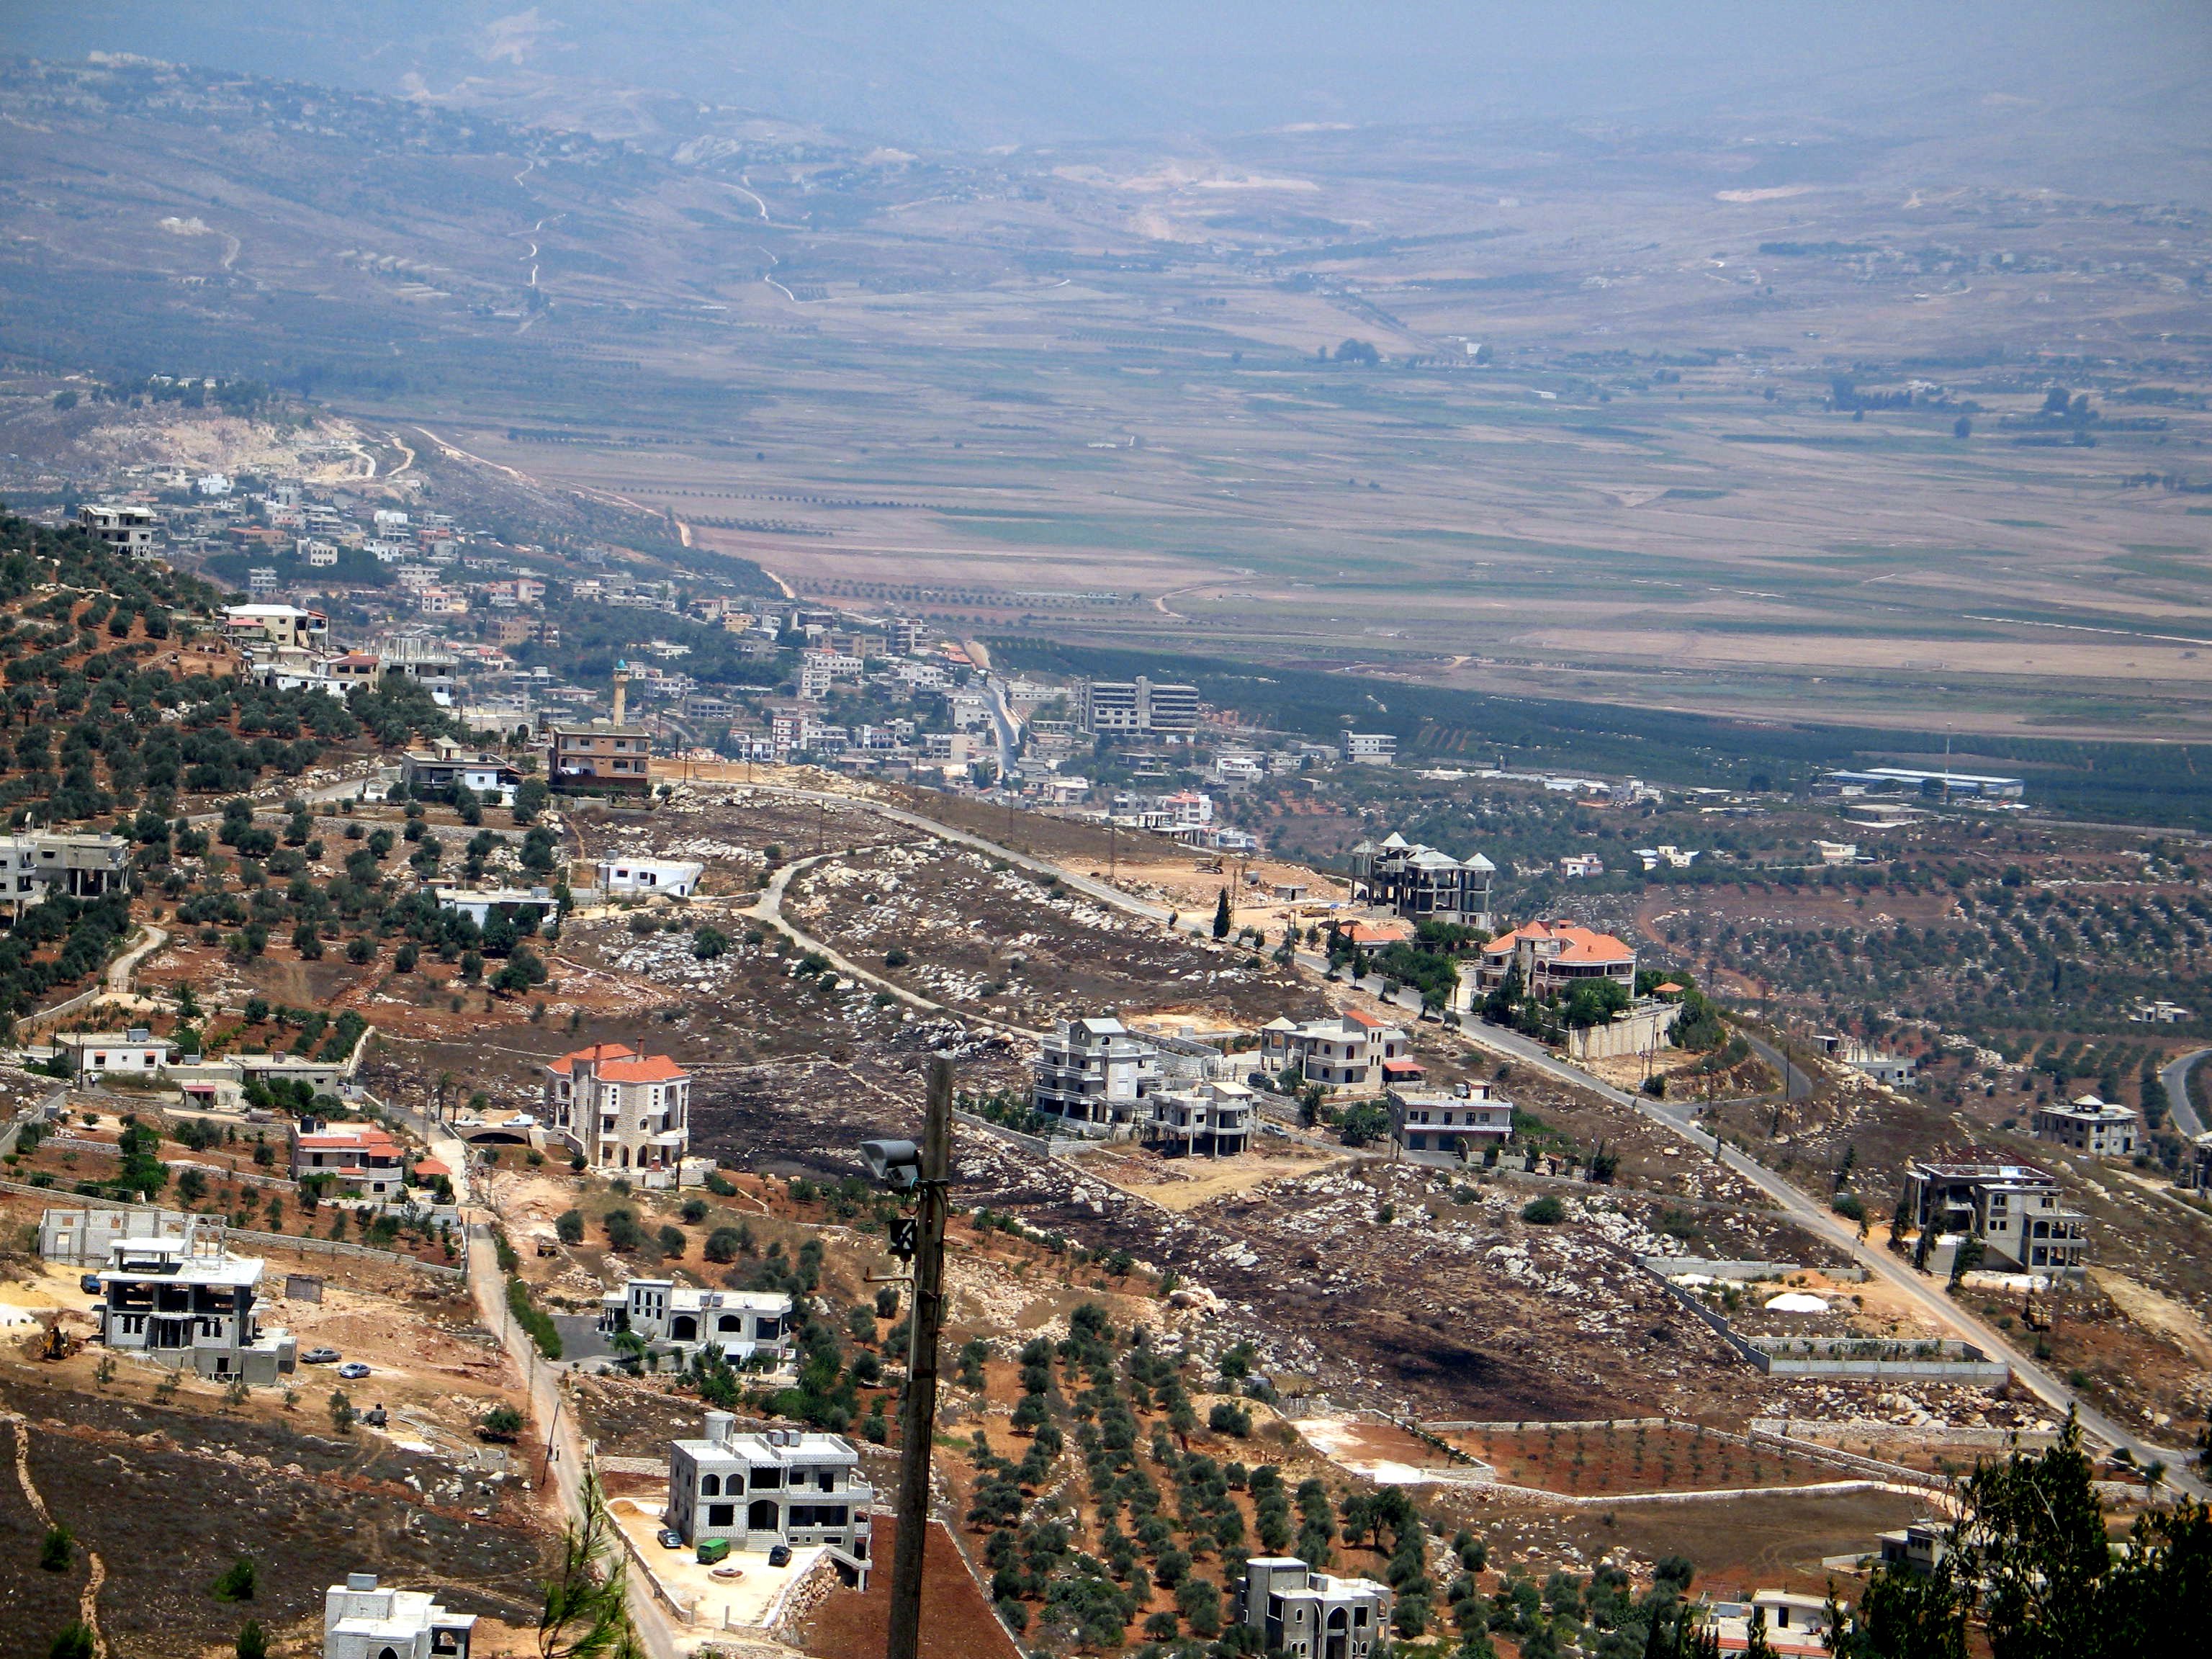 Image of Lebanon